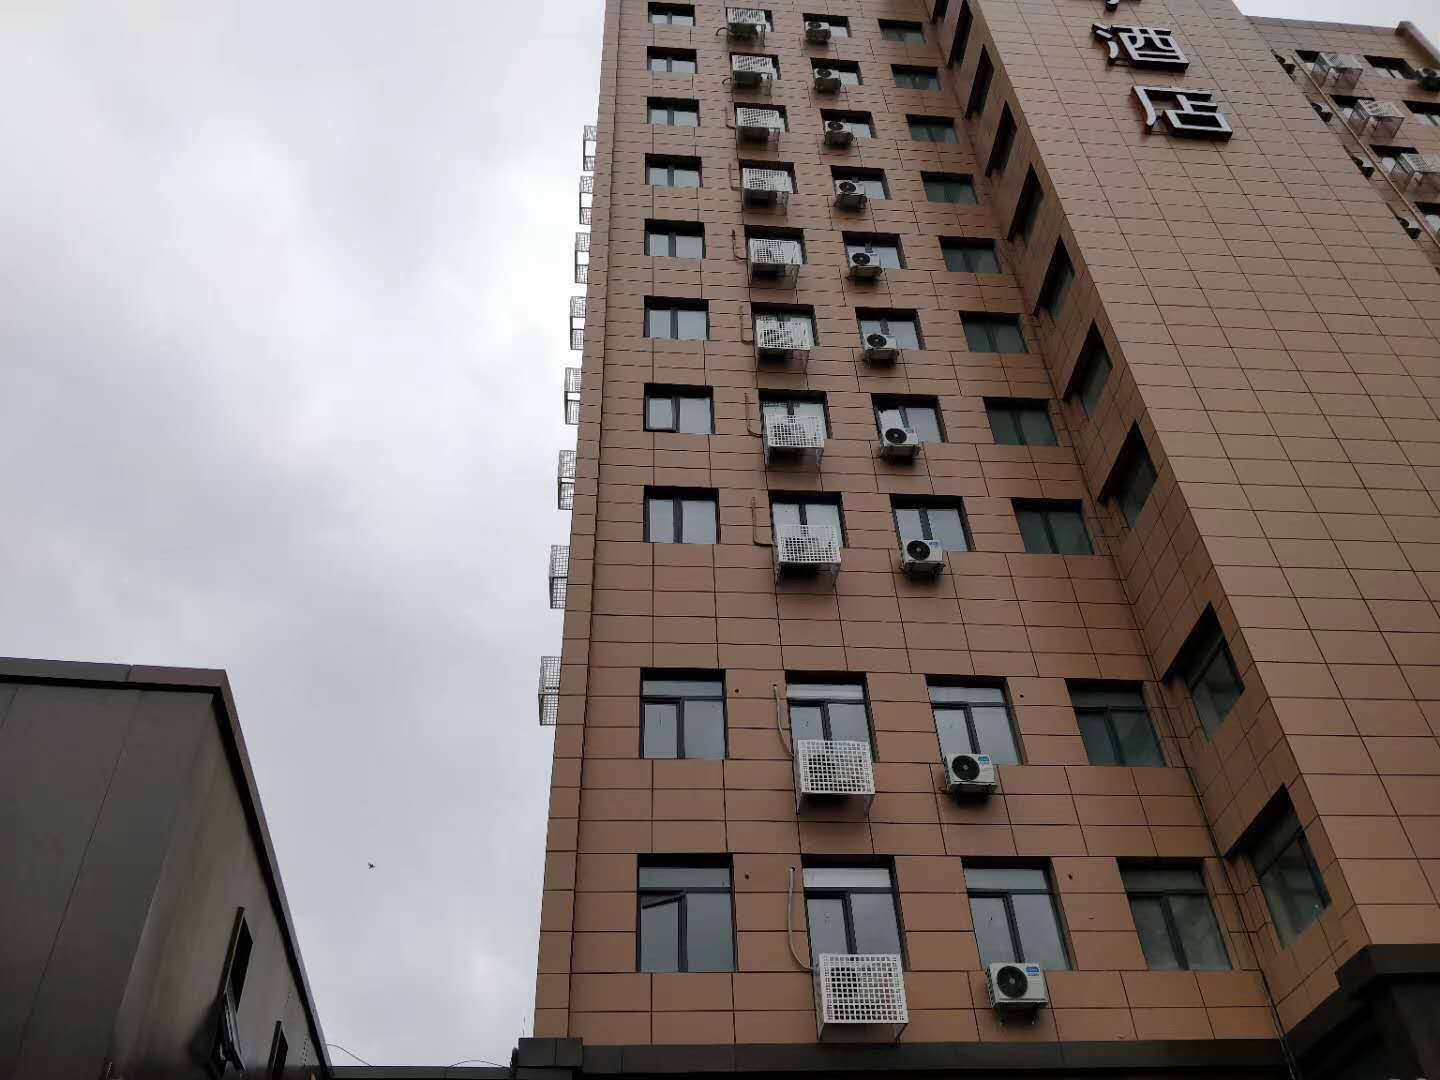 百色一酒店整体加固改造工程